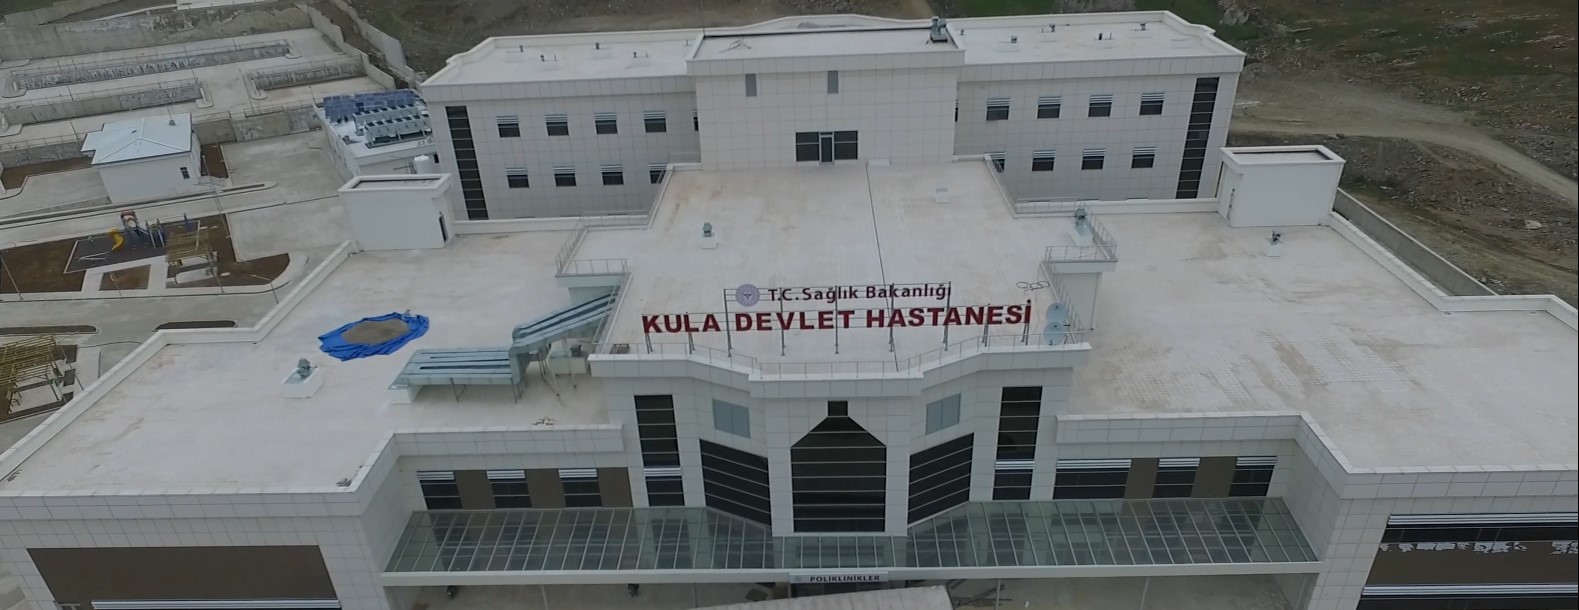 kula-devlet-hastanesi1.png